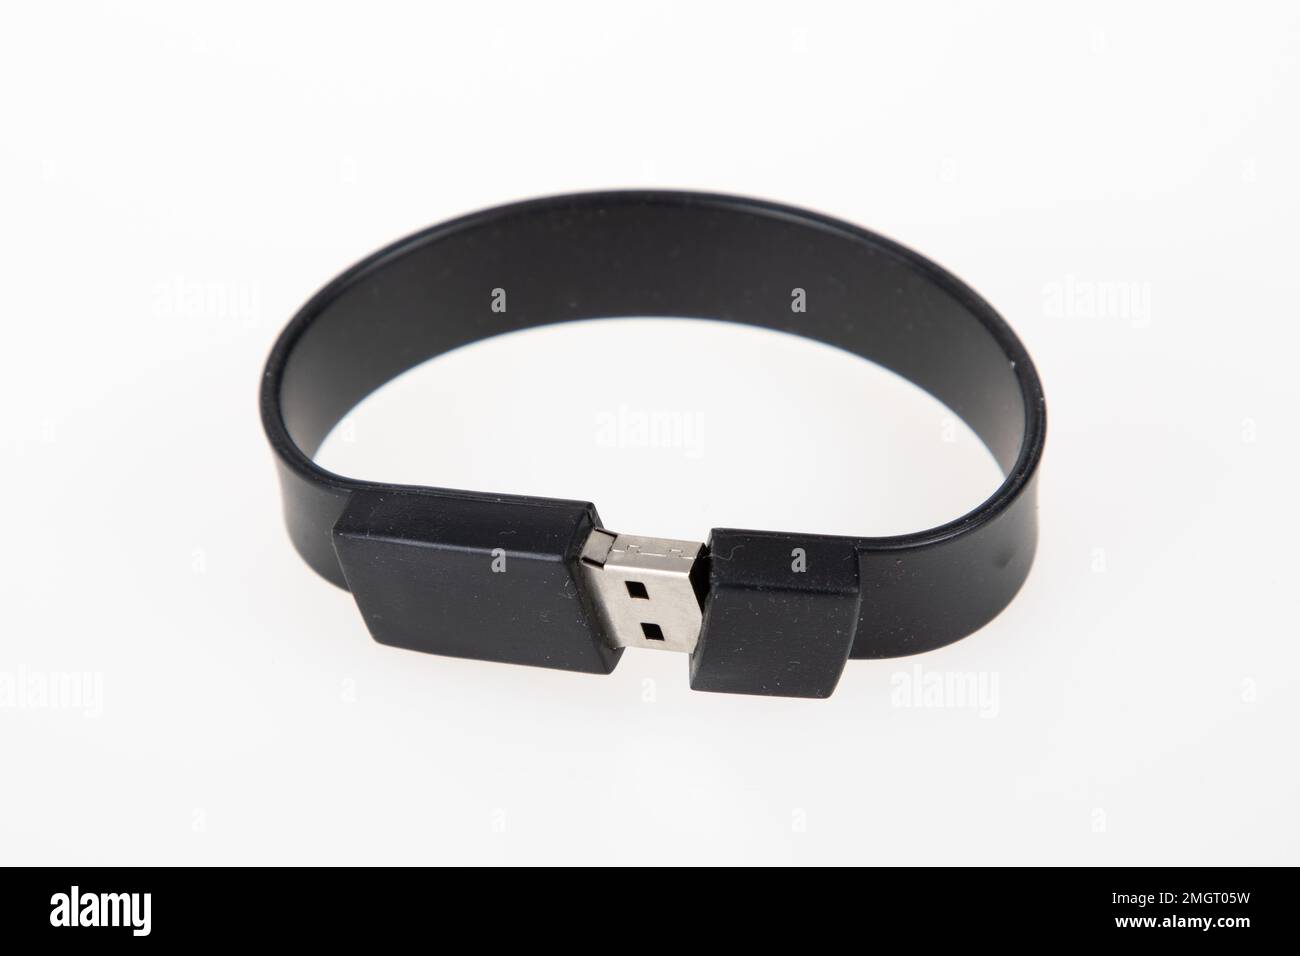 Bracelet de clé USB Bangle clé USB promotionnelle noir Banque D'Images